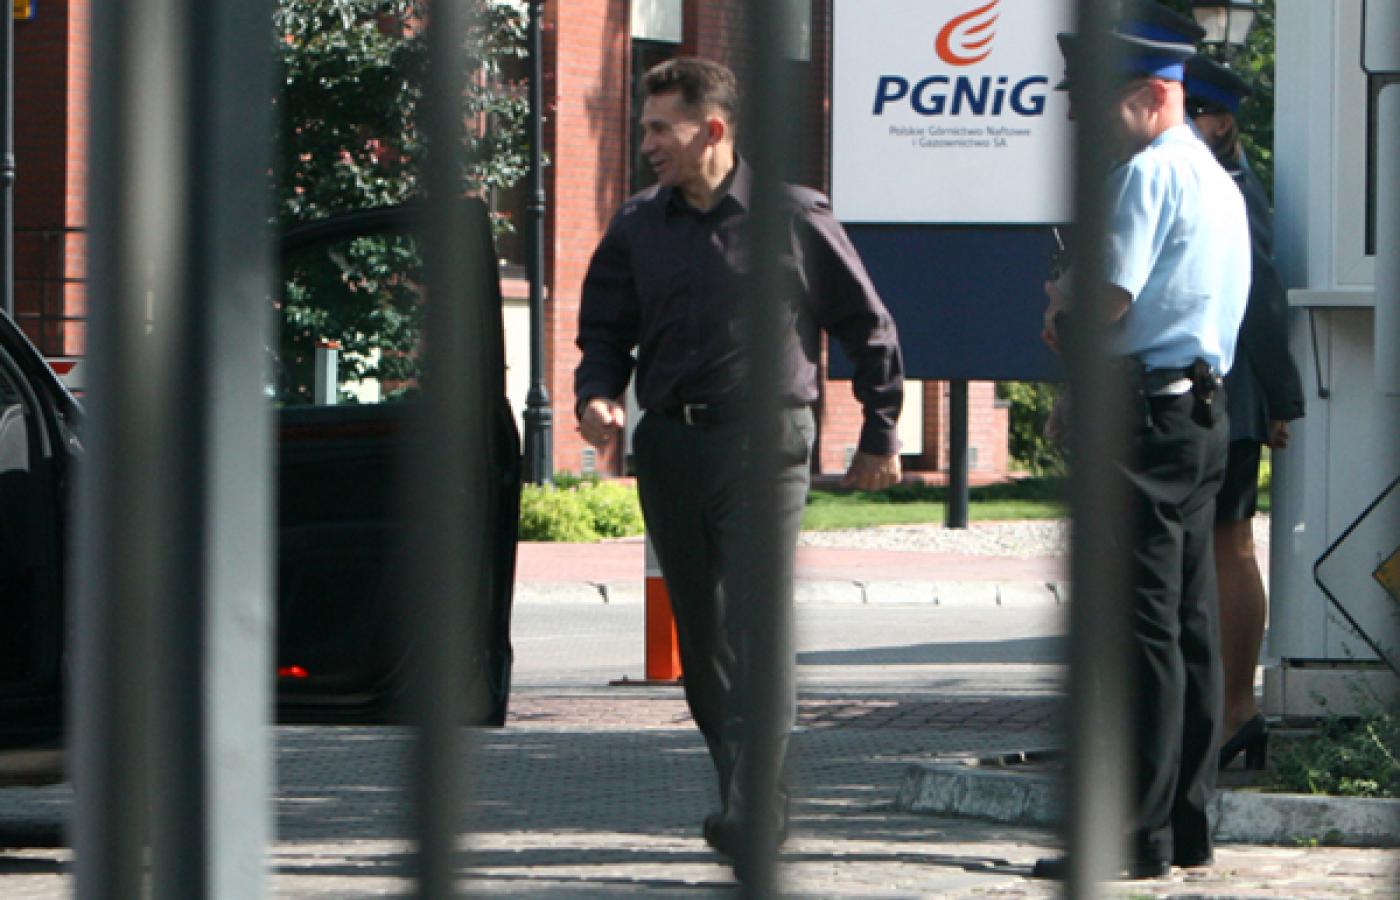 gen. Andrzej Matejuk (komendant główny policji) w drodze na piknik (fot. Dyzz, zdjęcie chronione prawami autorskimi, wszelkie wykorzystanie za zgodą i wiedzą redakcji)